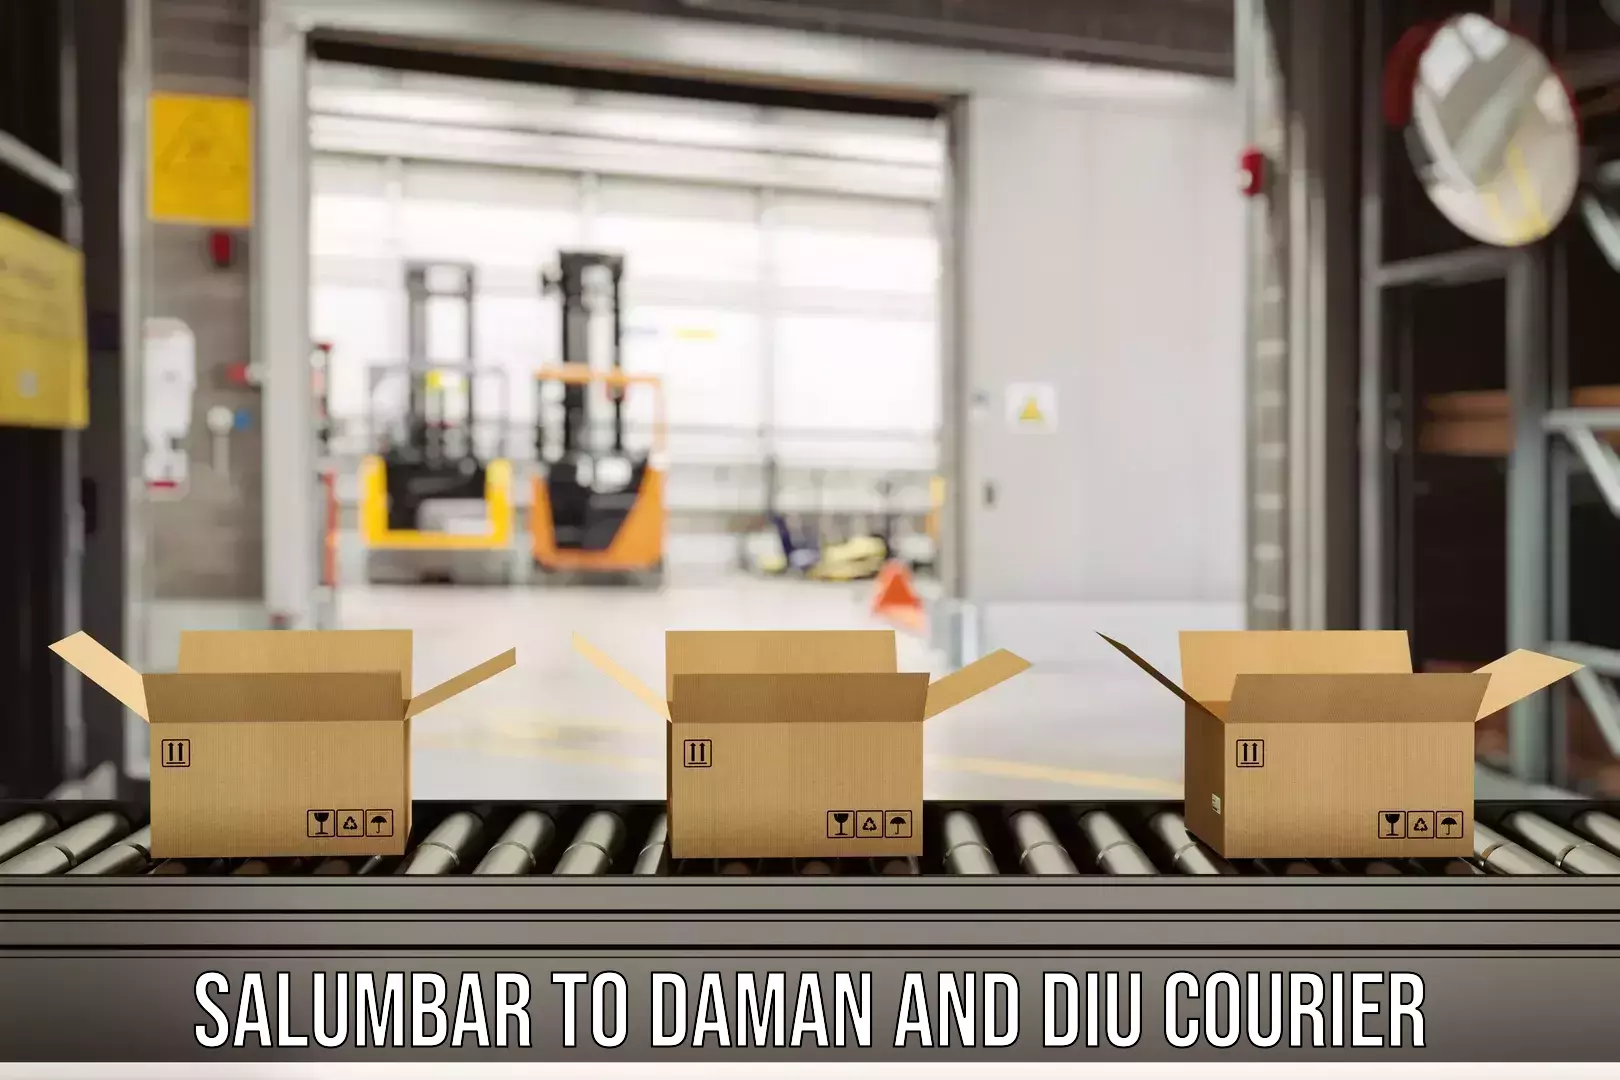 Express delivery capabilities Salumbar to Daman